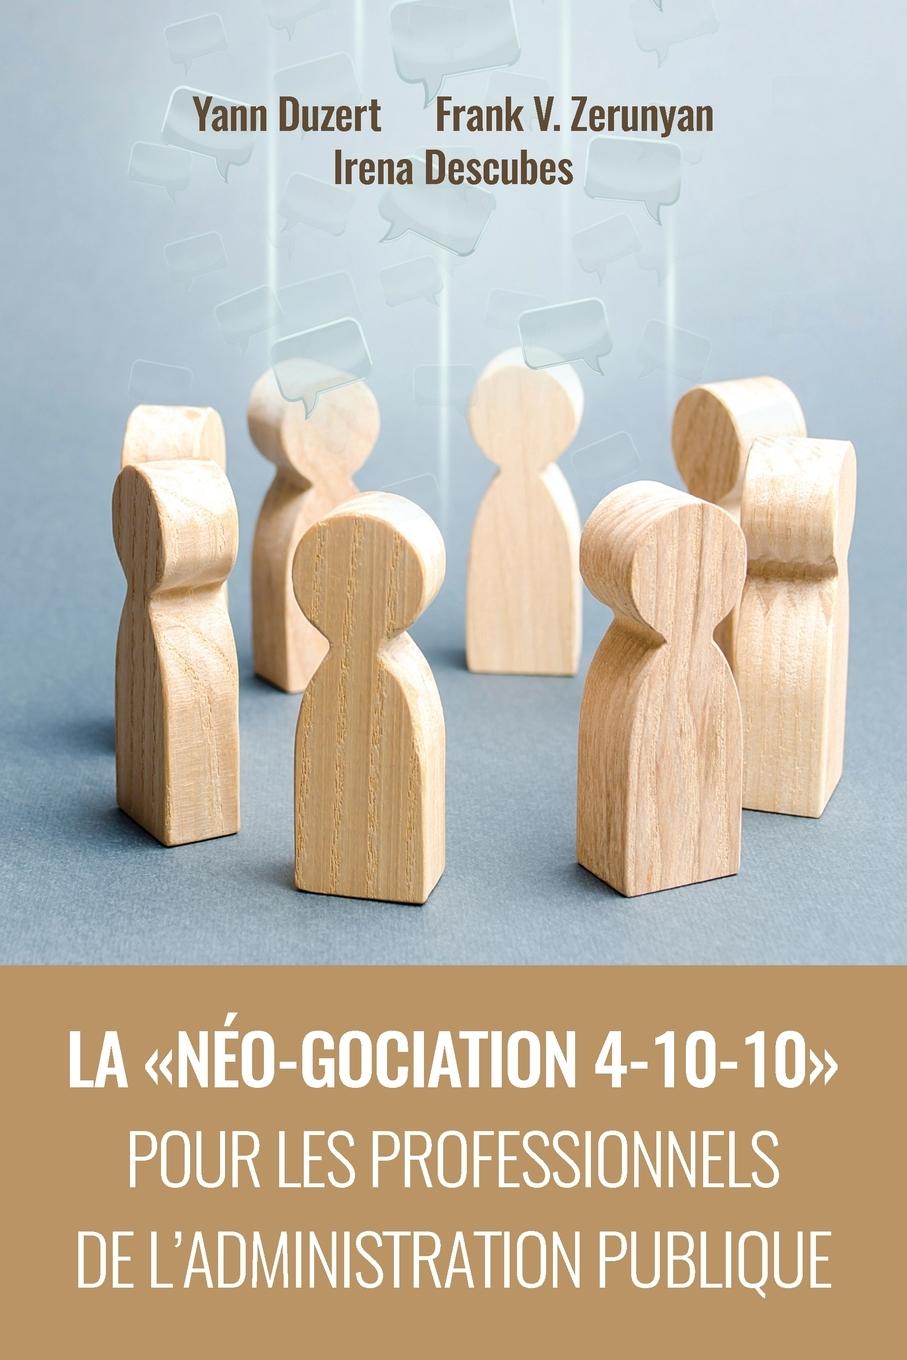 Kniha Neo-Gociation 4-10-10 Pour Les Professionnels de l'Administration Publique Yann Duzert